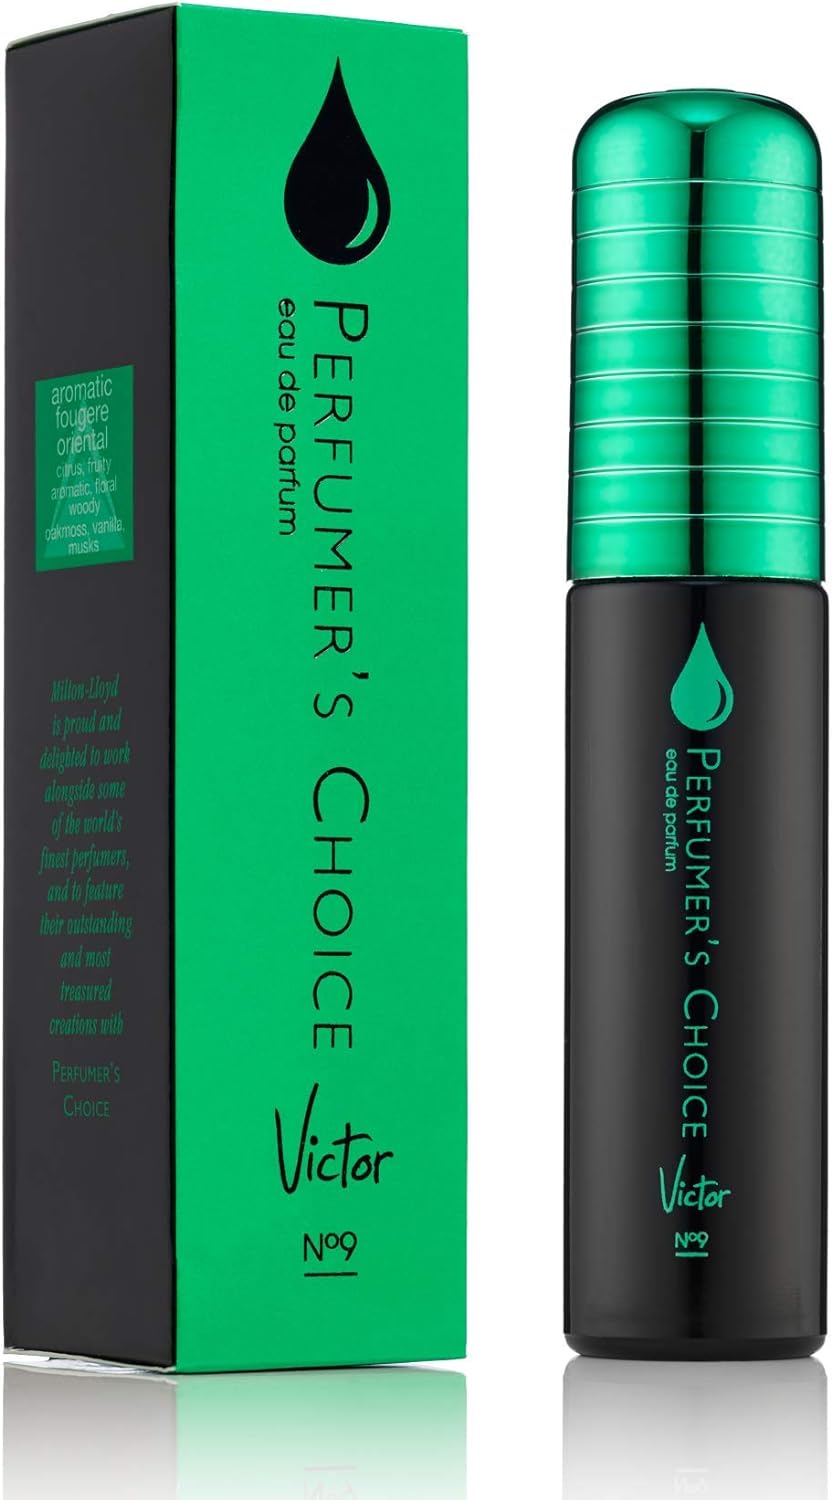 Perfumer's Choice Victor 50ml EDP